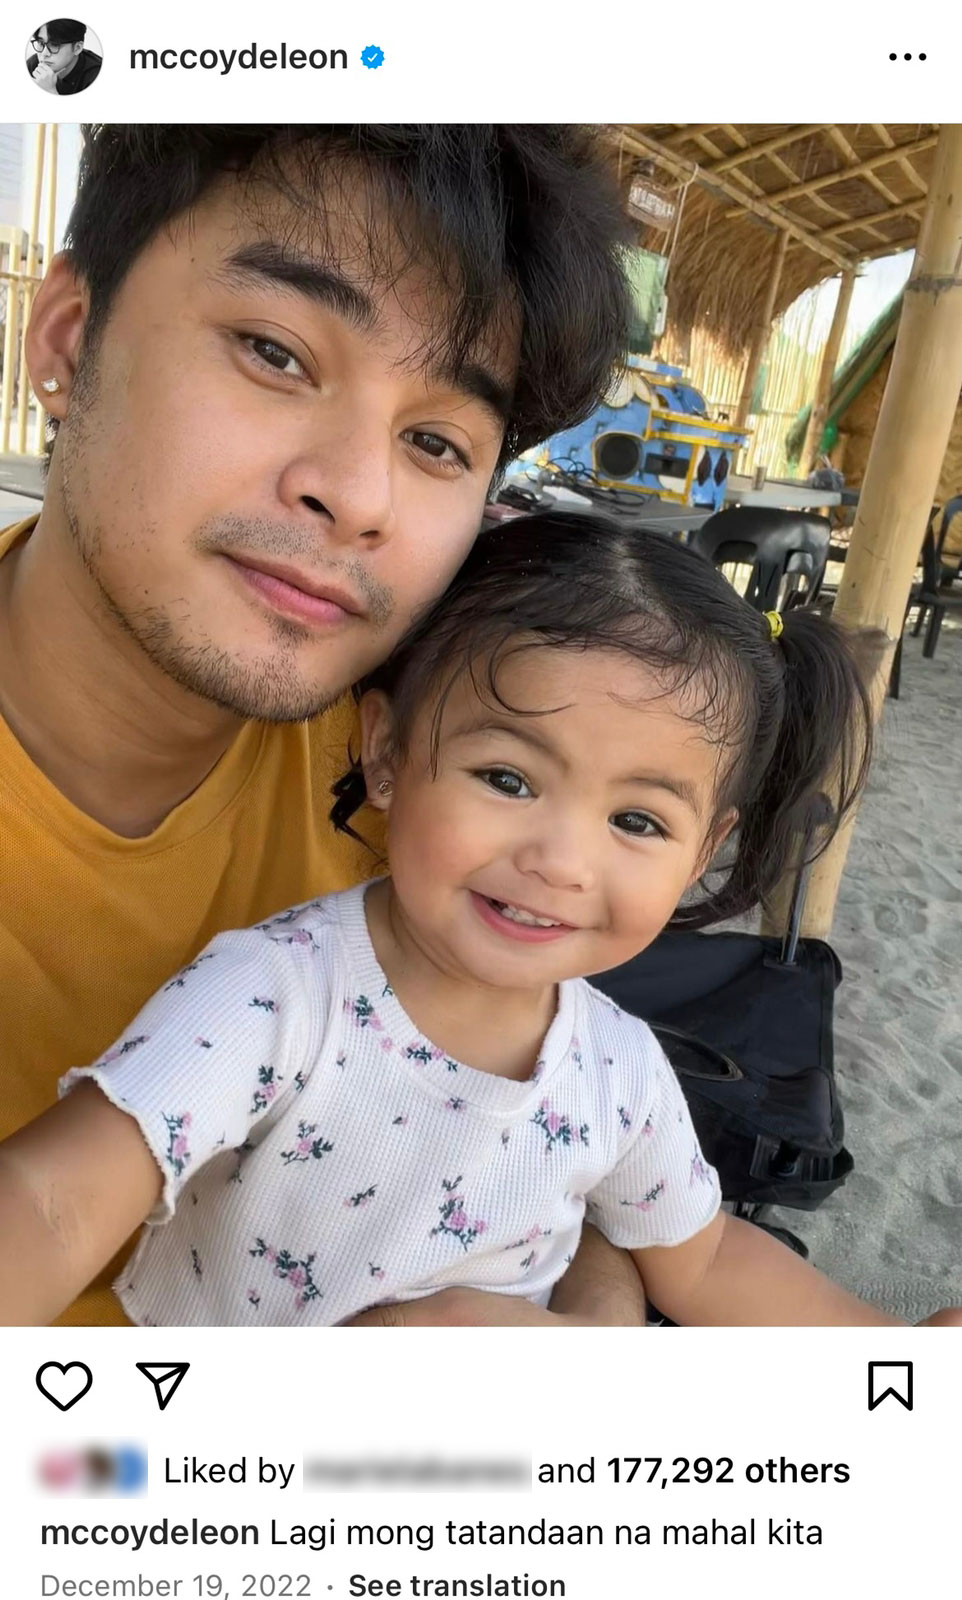 mccoy de leon posts selfie with daughter